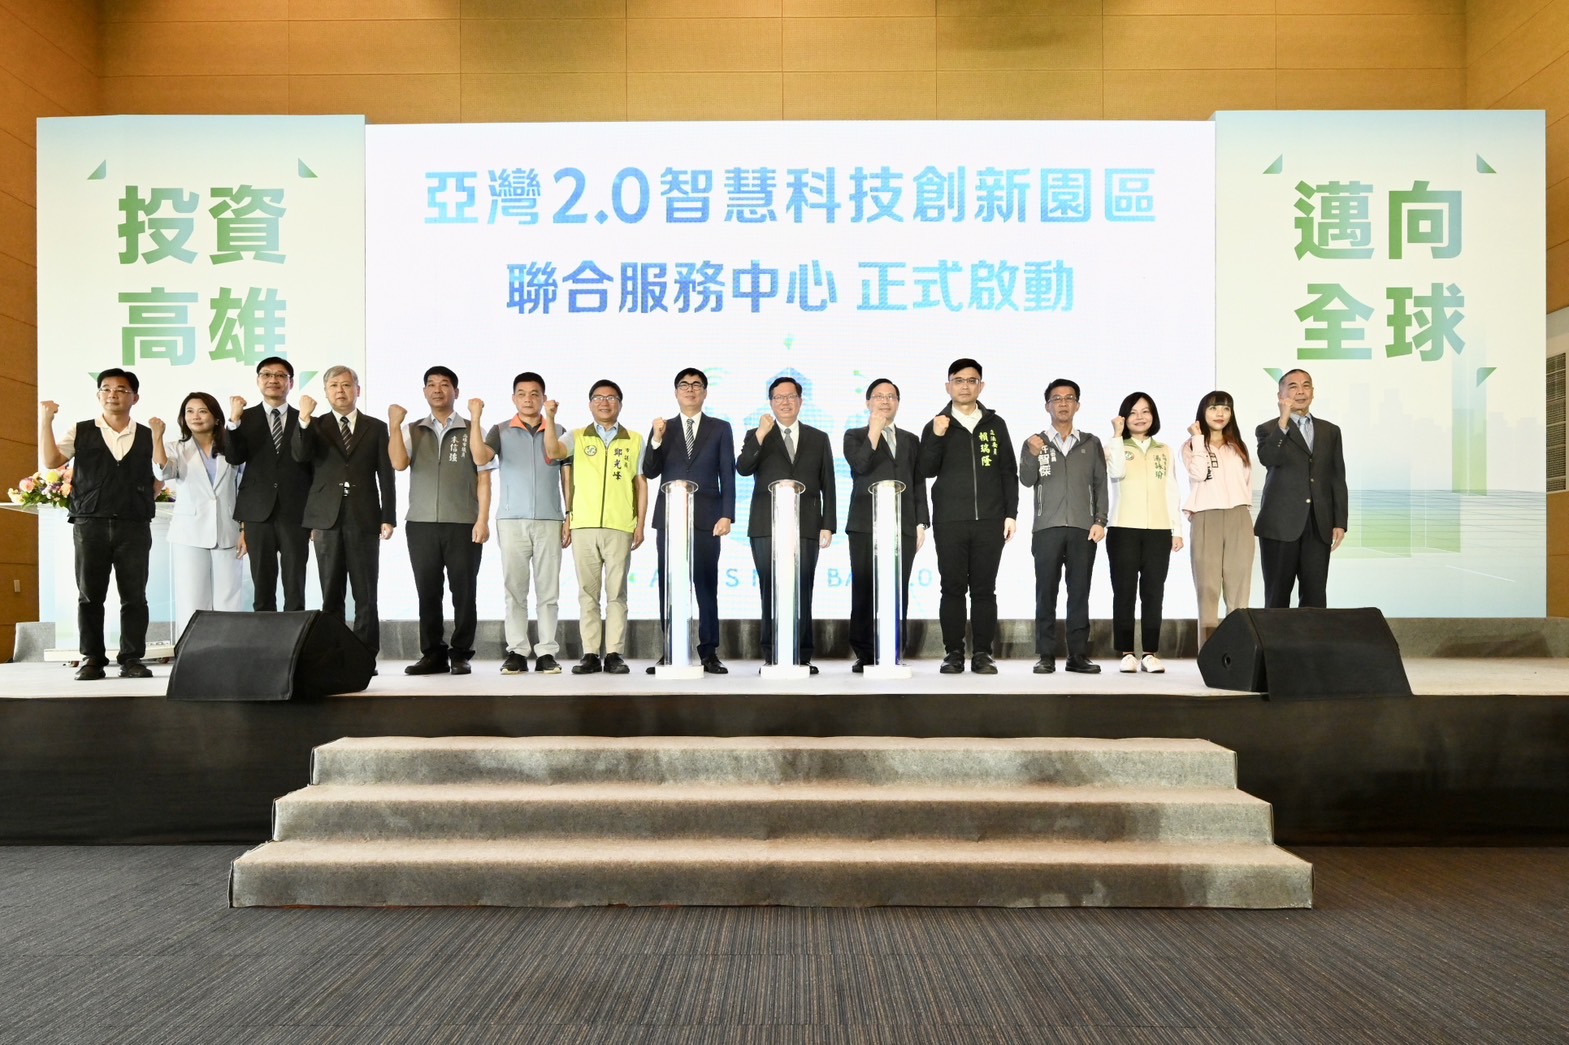 亞灣2.0智慧科技創新園區招商啟動